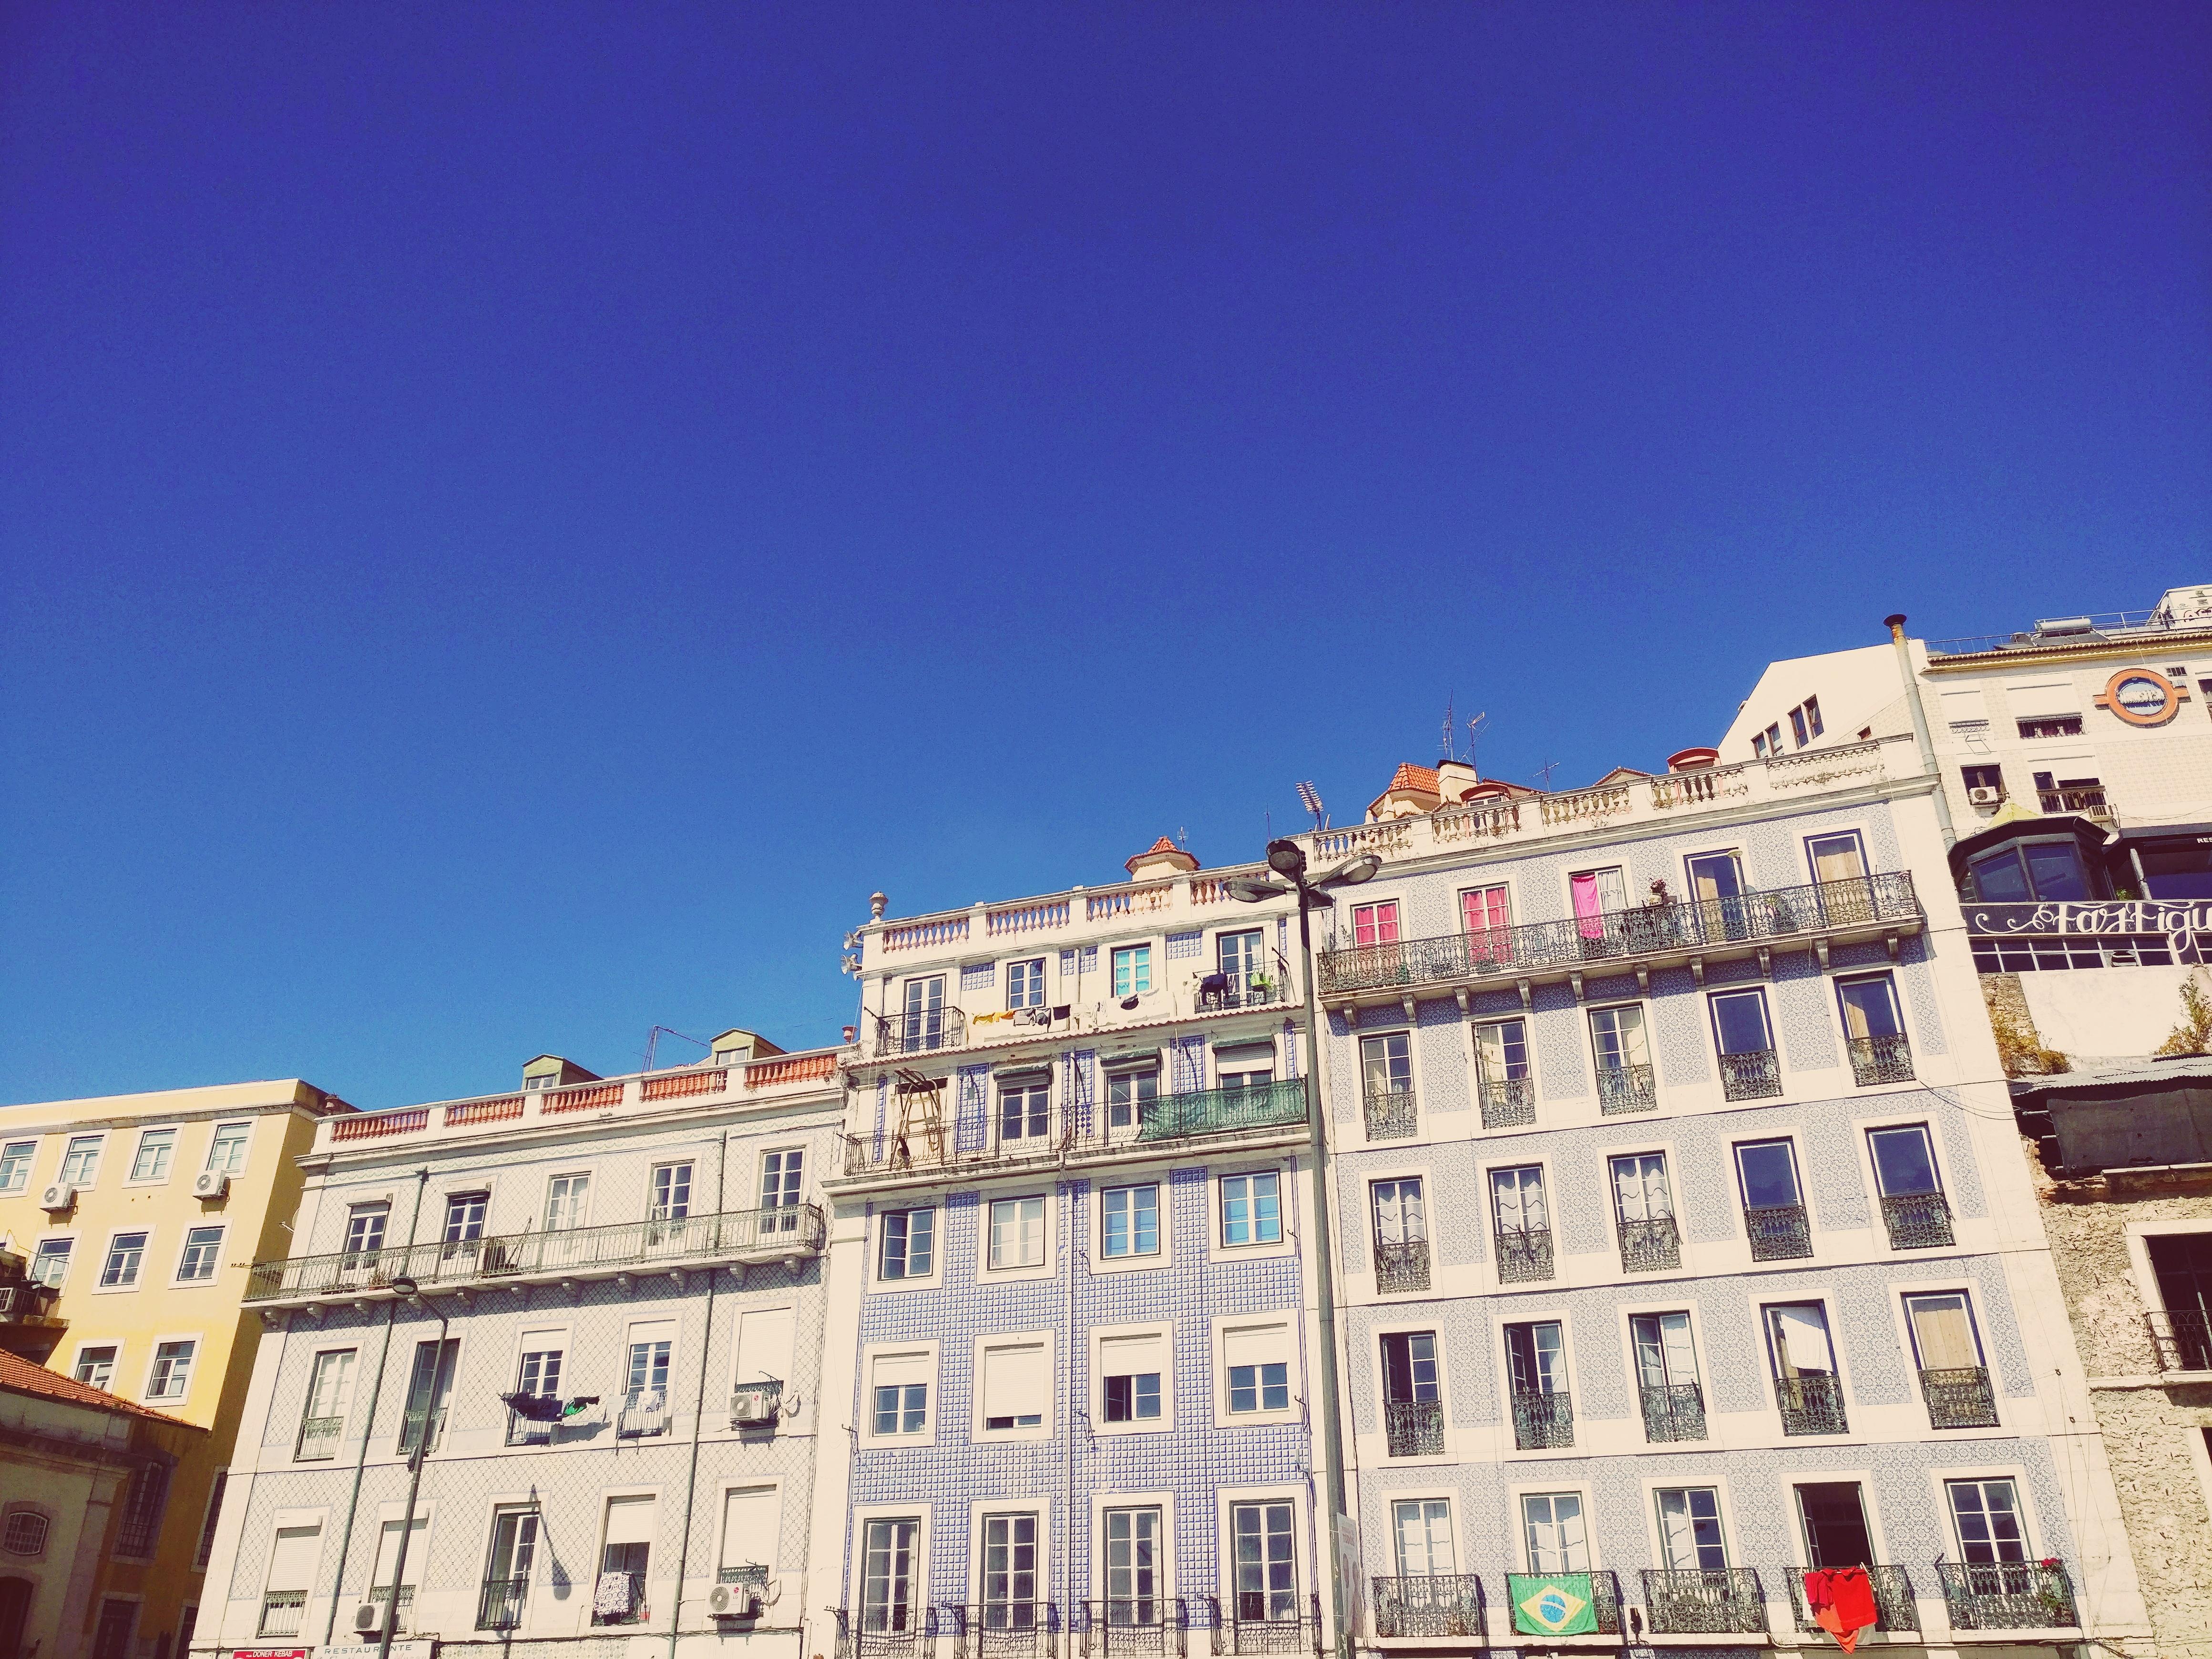 Lissabon 💘

#Lissabon #traveldiary